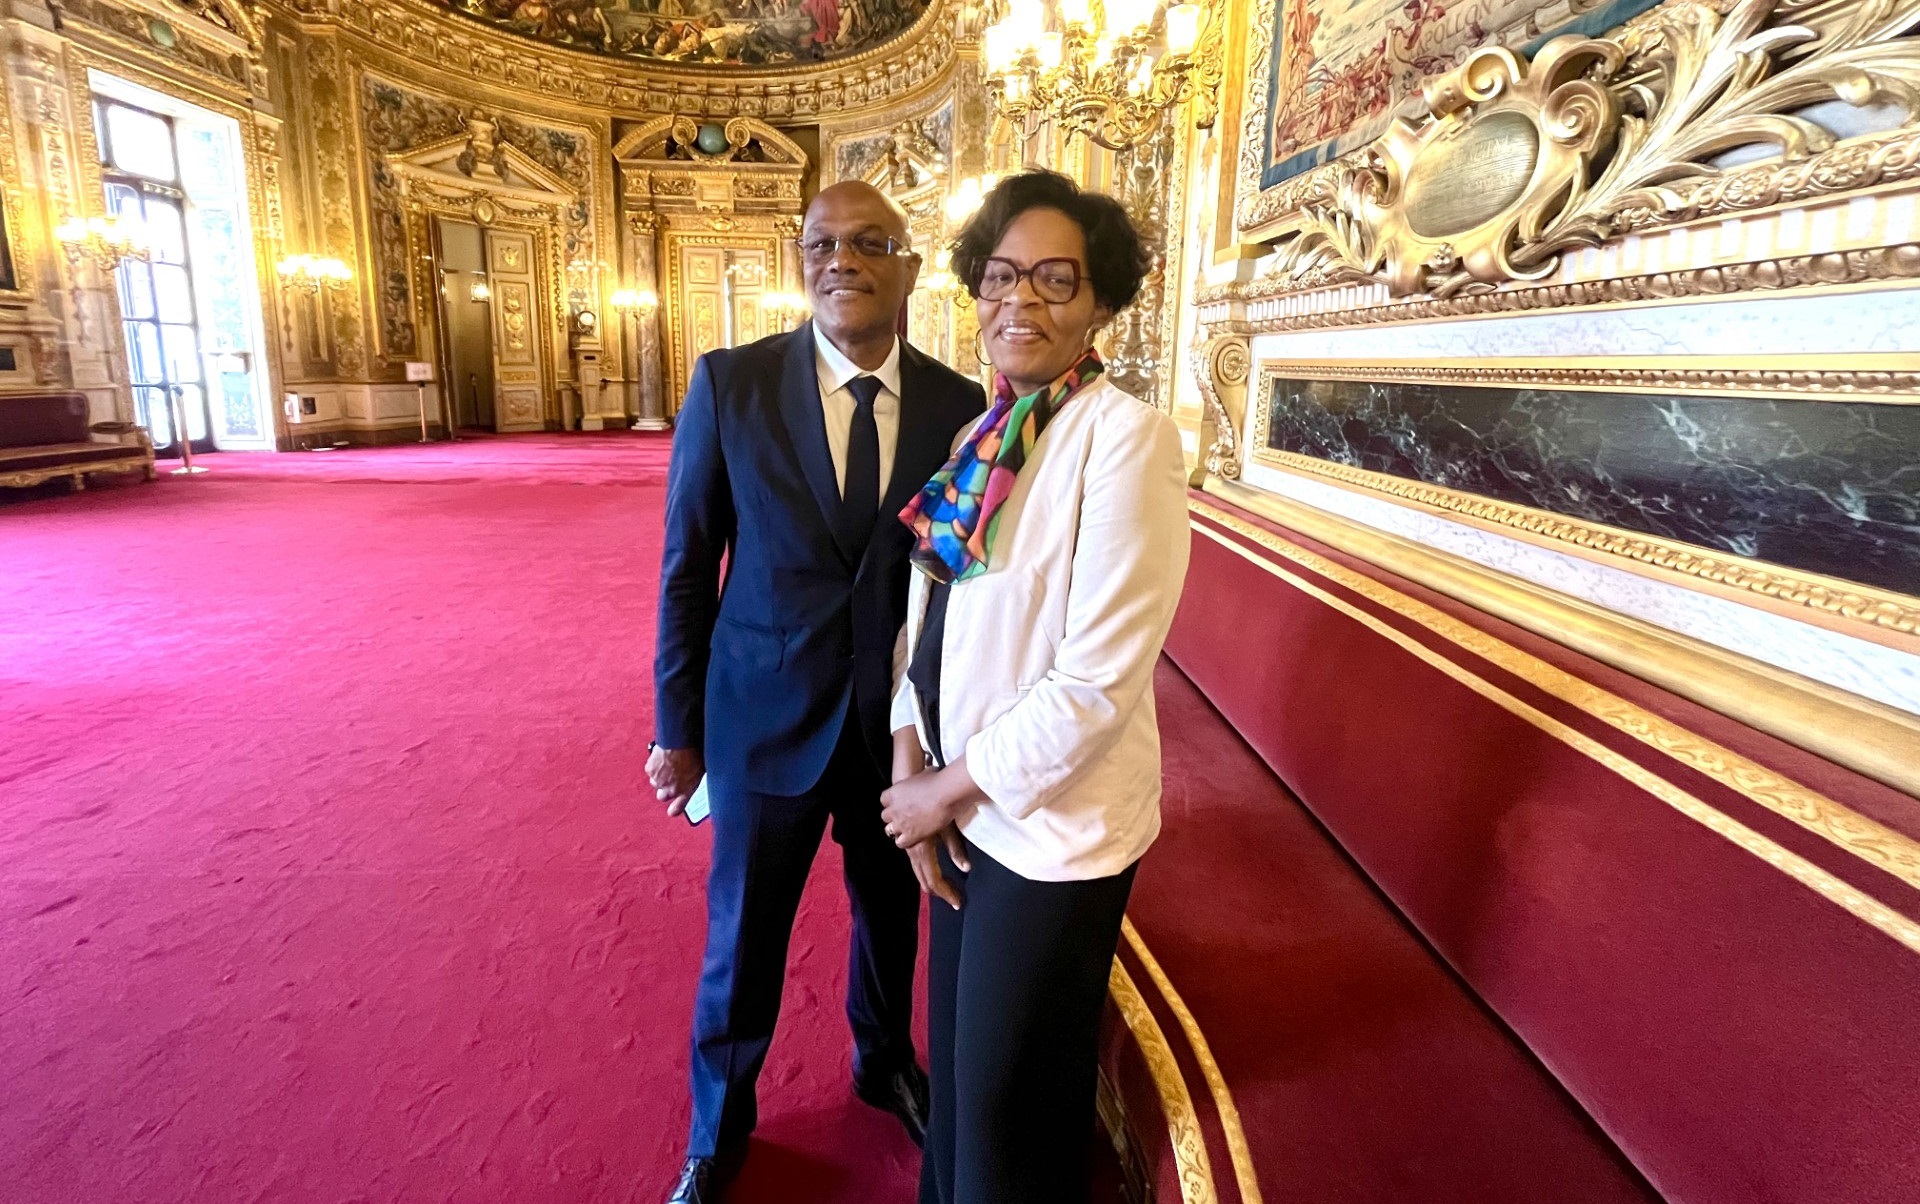     Solanges Nadille, la nouvelle sénatrice de la Guadeloupe, prend ses marques à Paris

